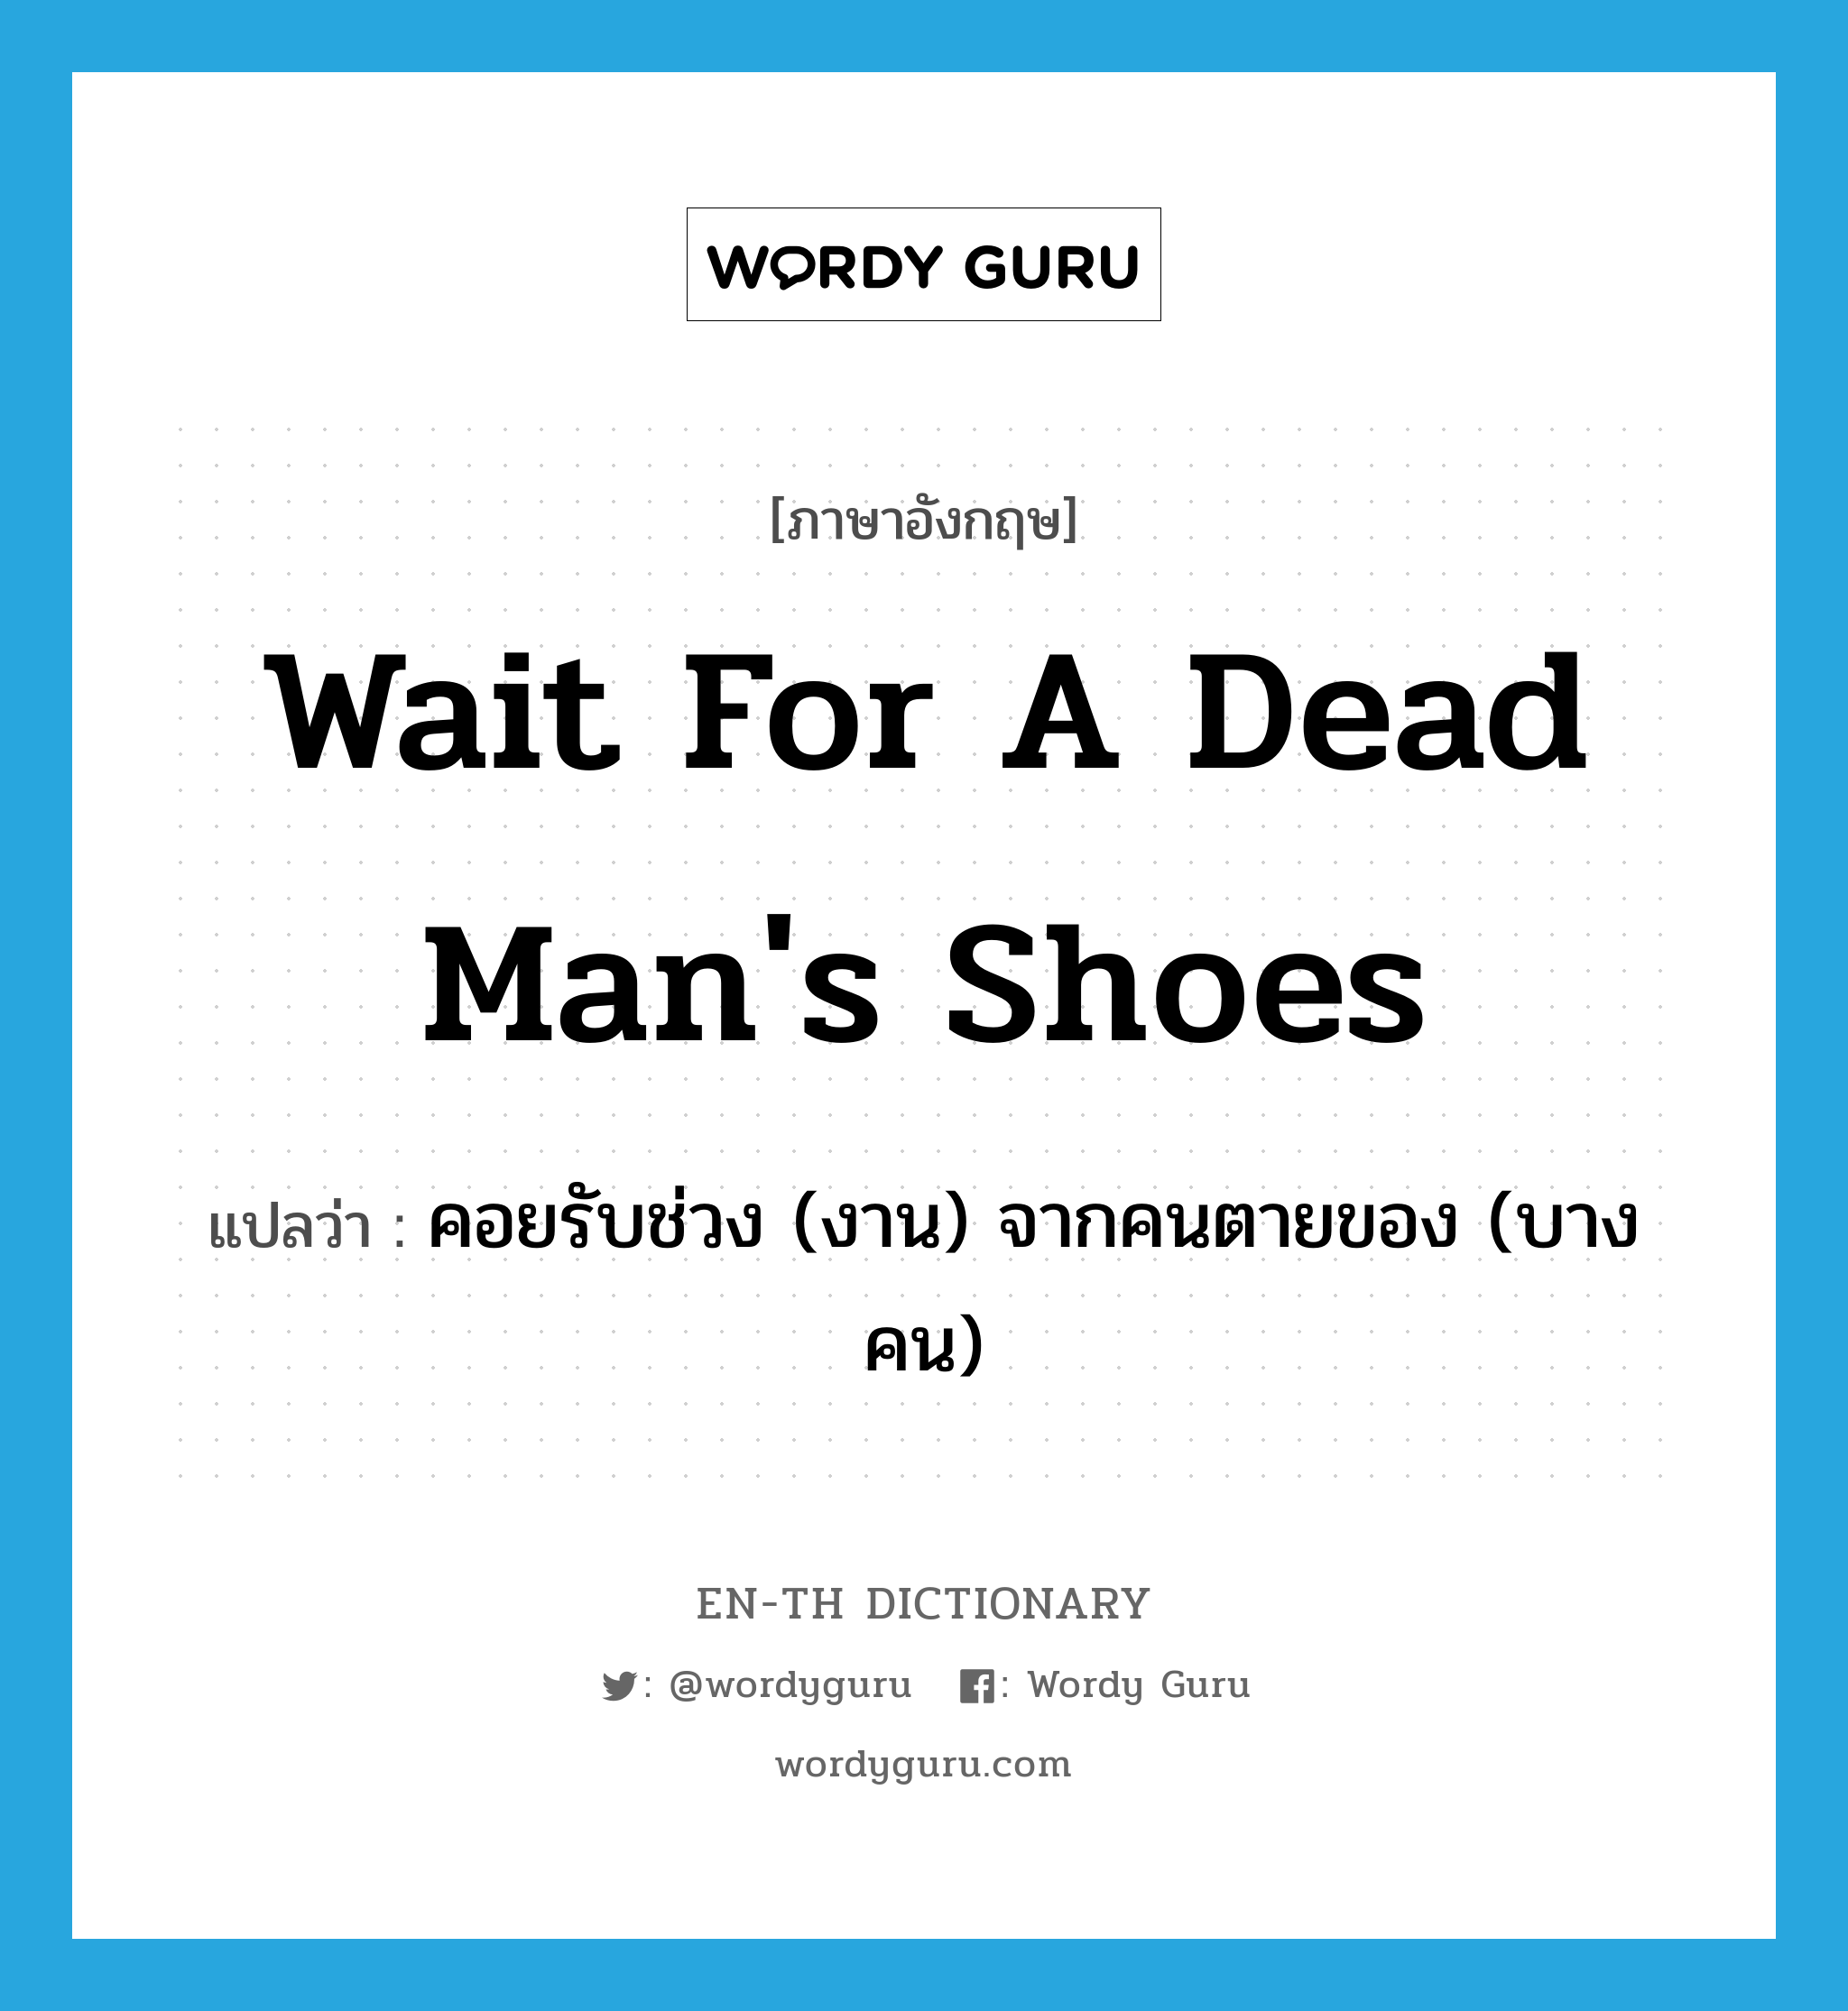 คอยรับช่วง (งาน) จากคนตายของ (บางคน) ภาษาอังกฤษ?, คำศัพท์ภาษาอังกฤษ คอยรับช่วง (งาน) จากคนตายของ (บางคน) แปลว่า wait for a dead man's shoes ประเภท IDM หมวด IDM